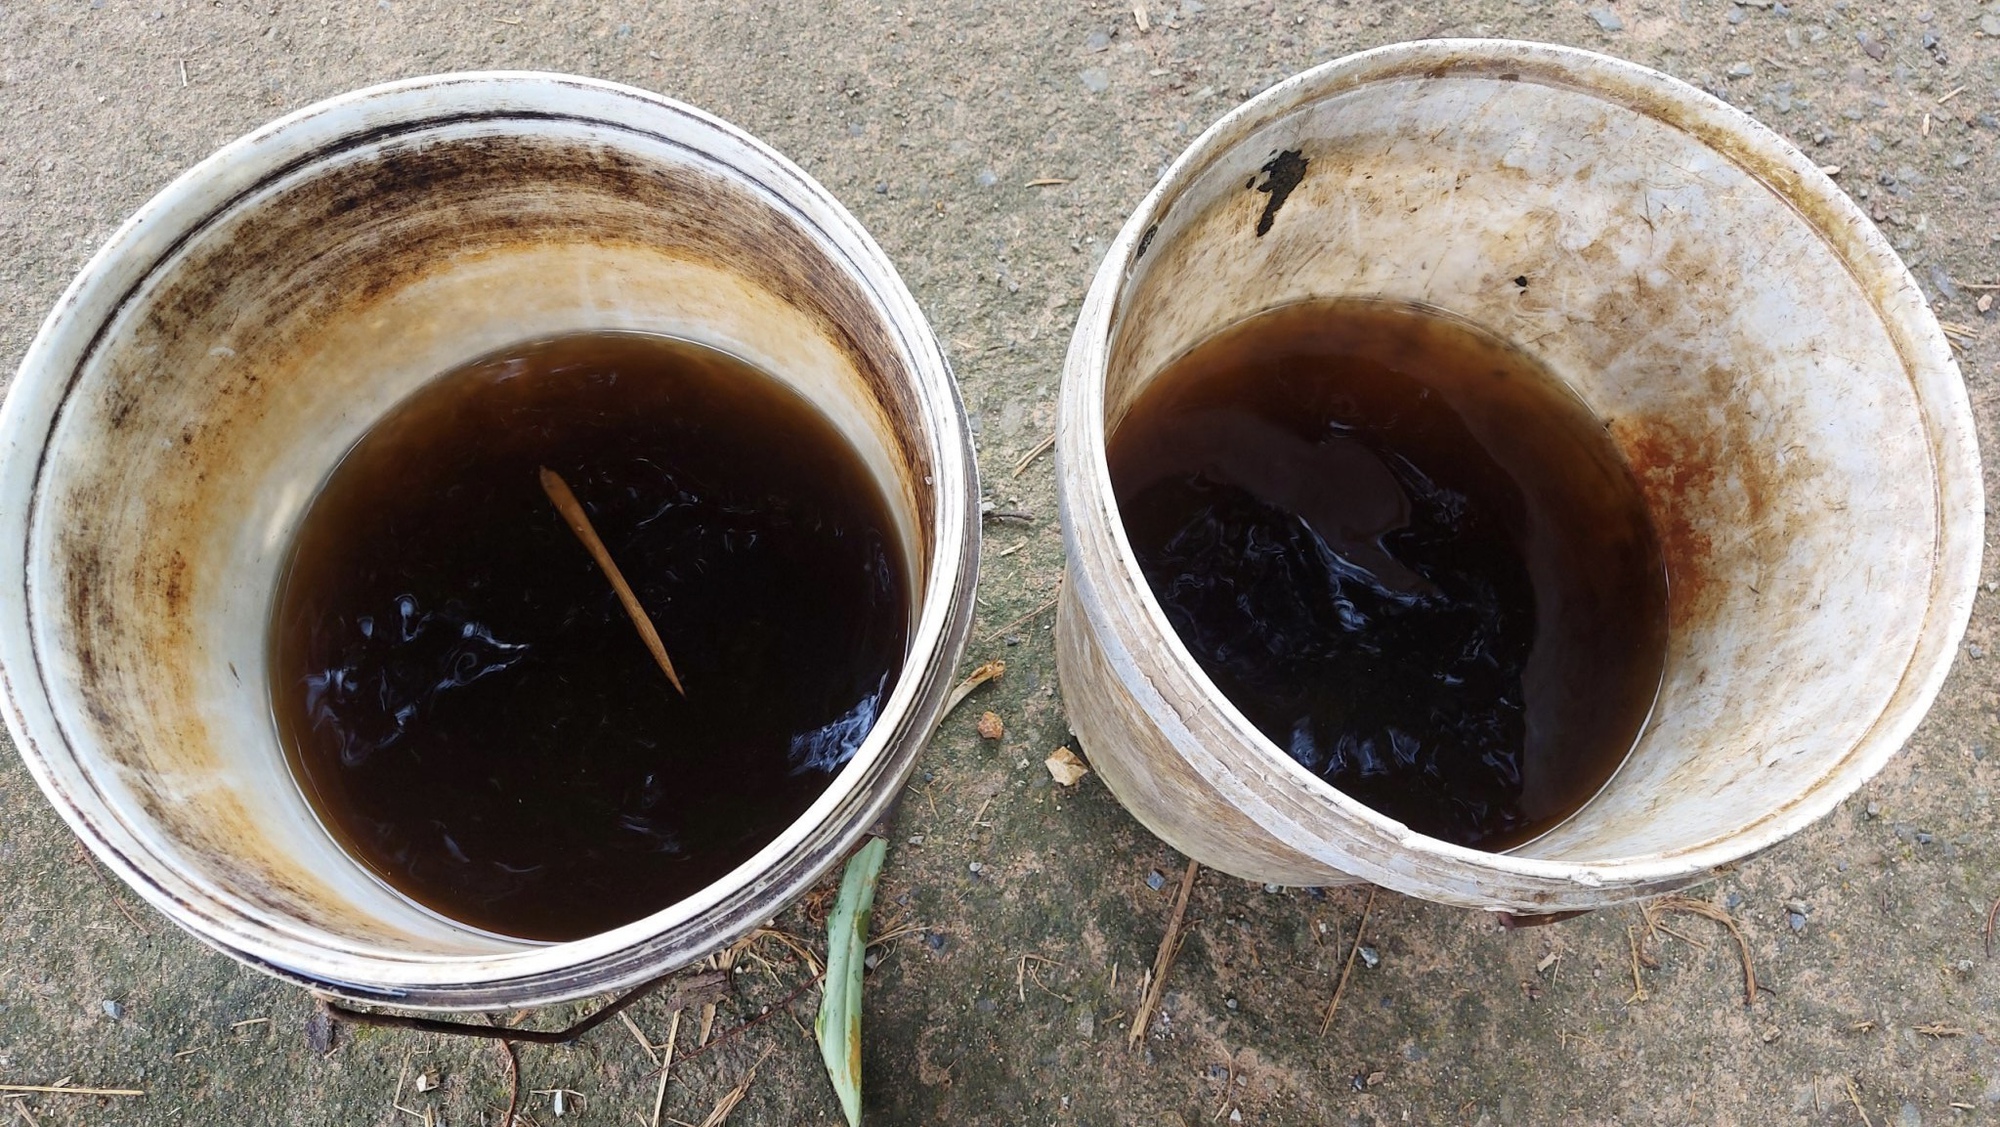 Bà Rịa - Vũng Tàu: Vỡ hồ chứa chất thải của công ty ven suối Giao Kèo - Ảnh 2.